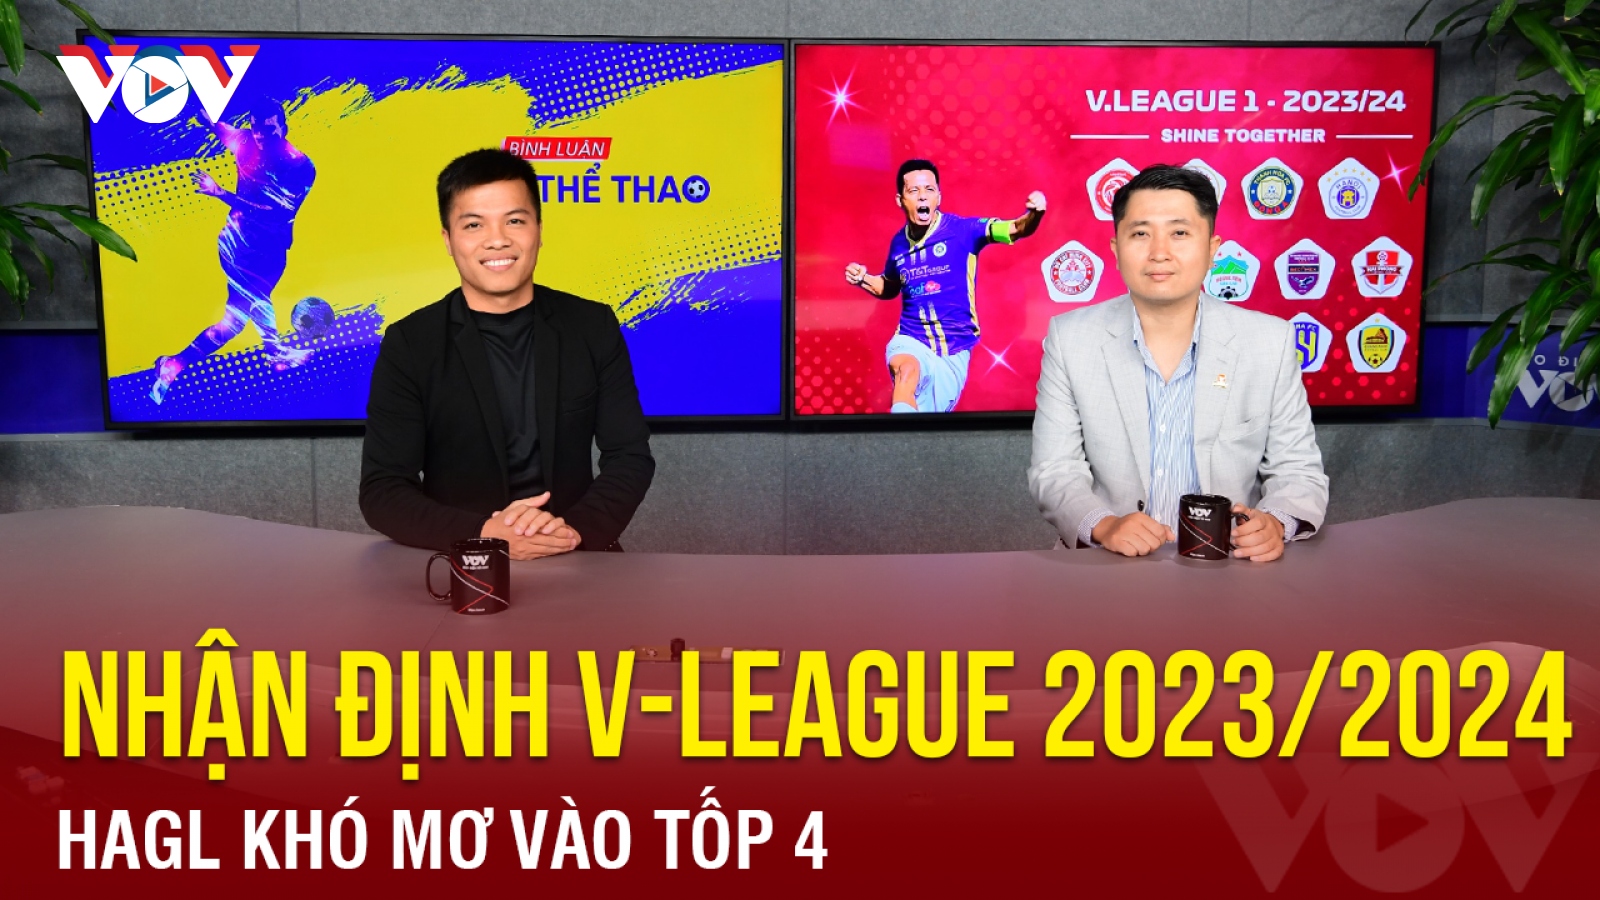 Nhận định V-League 2023/2024: HAGL khó mơ vào tốp 4